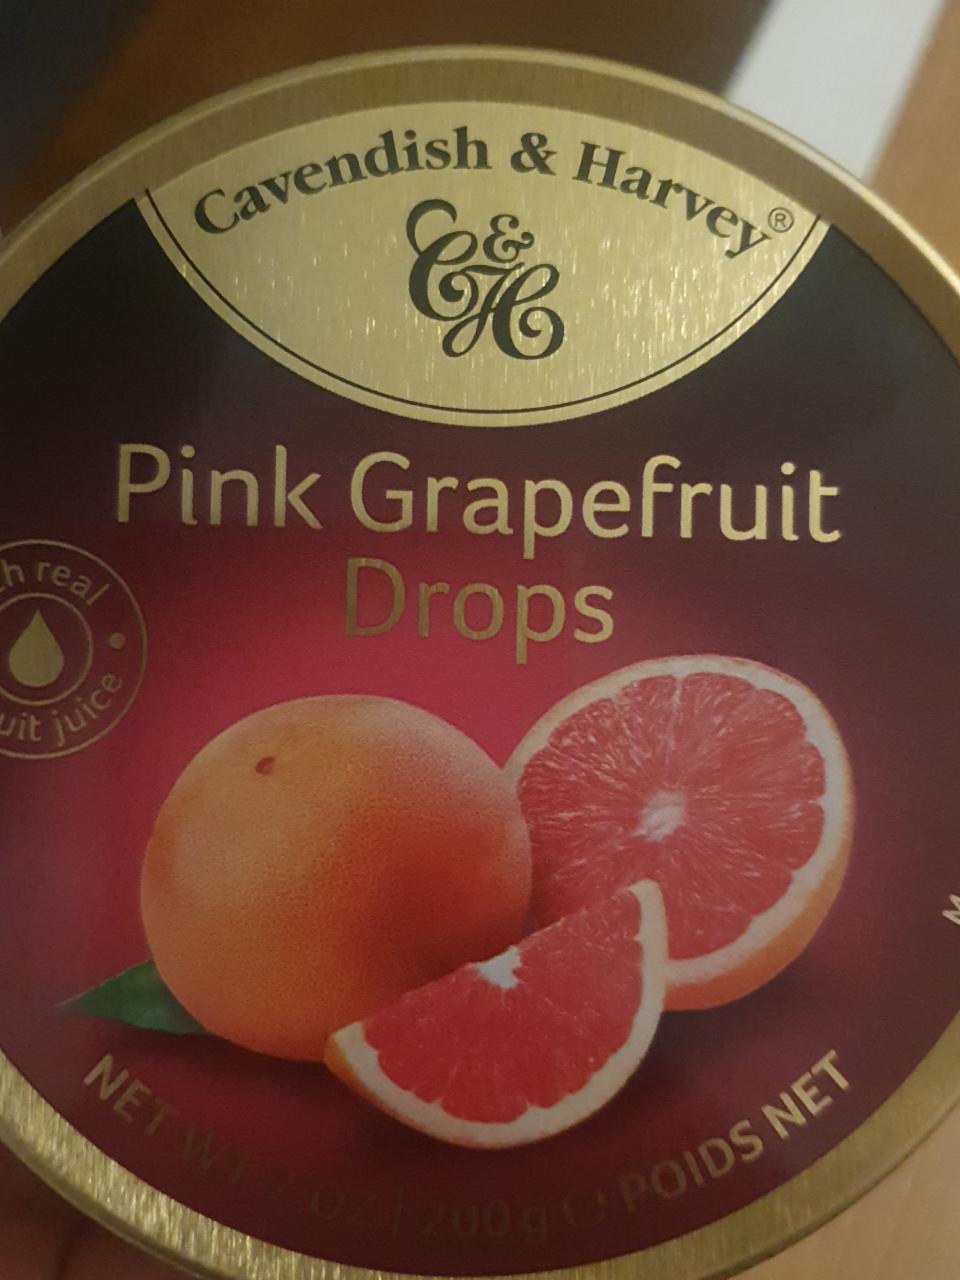 Zdjęcia - Pink Grapefruit Drops Cavendish & Harvey